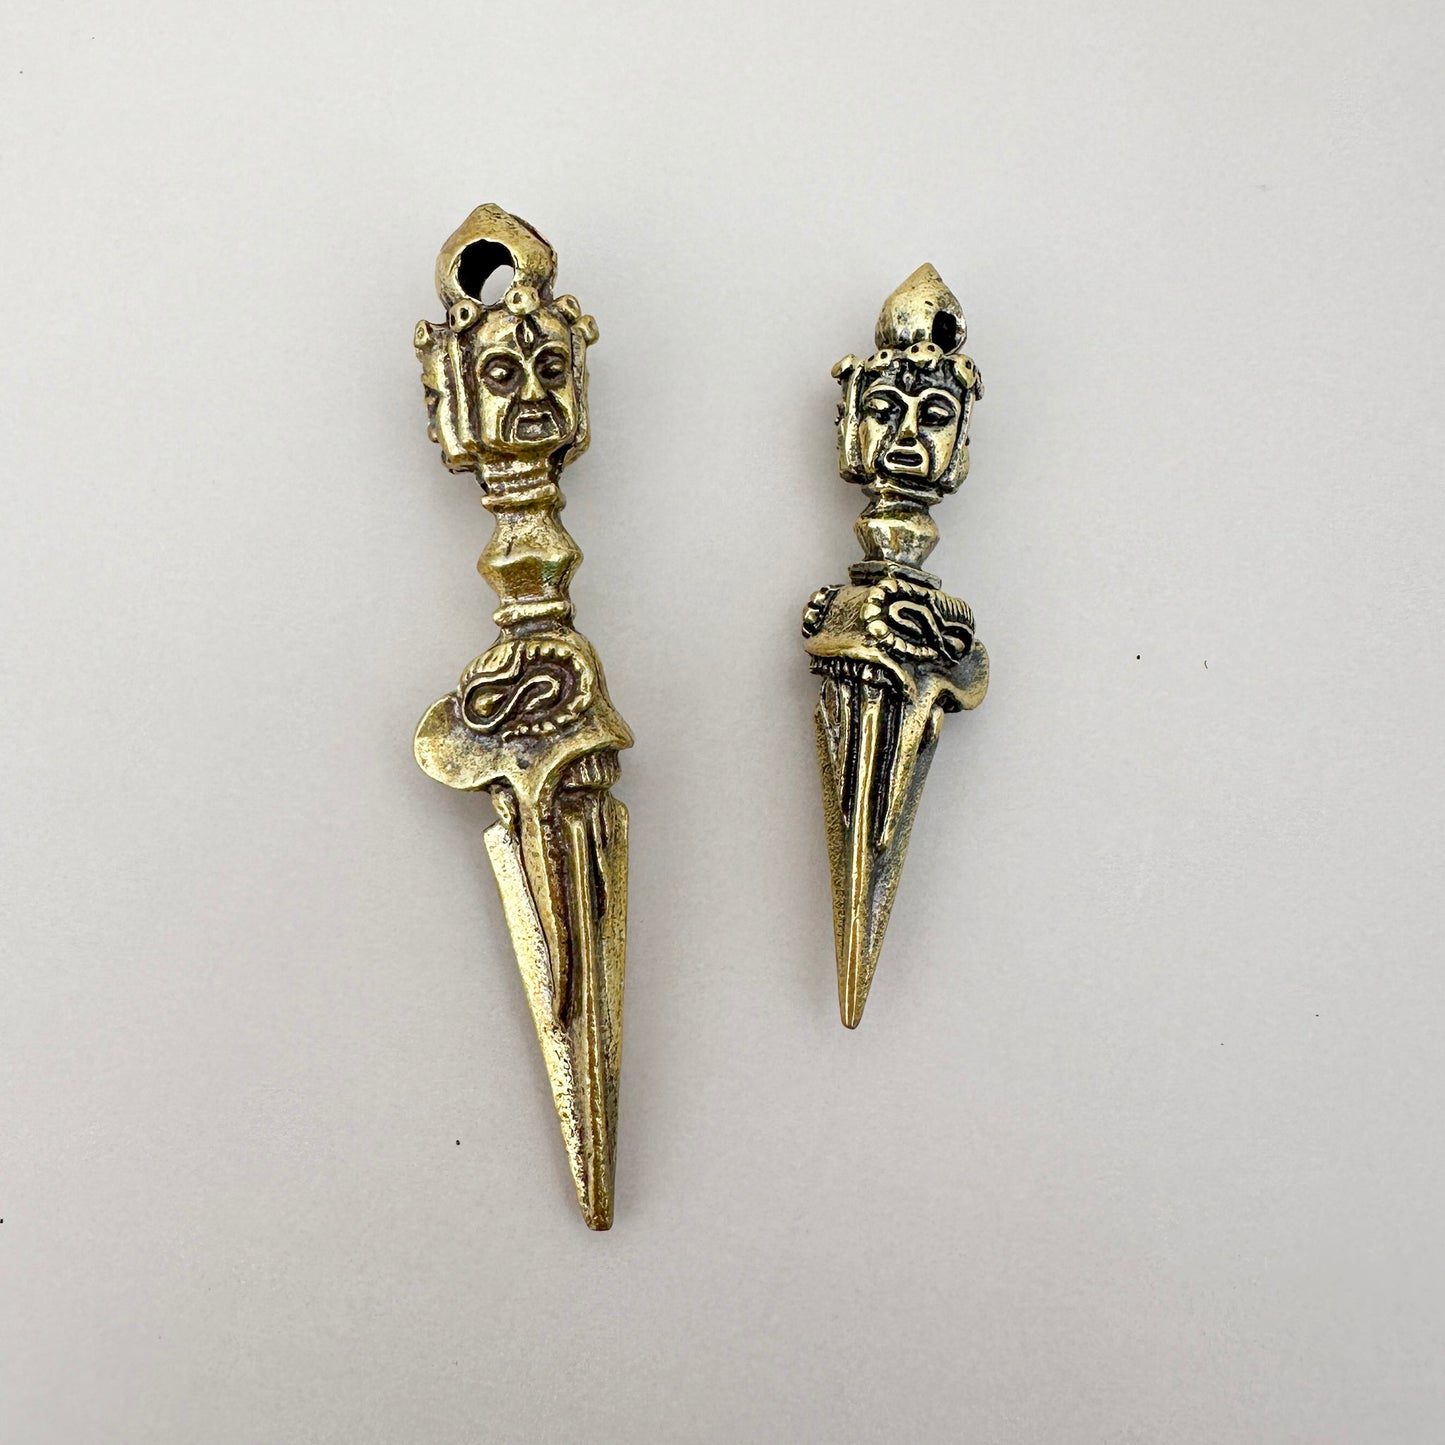 Tibetan Dorje Varje Bronze Amulet Spear Pendant - 1 pc. (M1935)